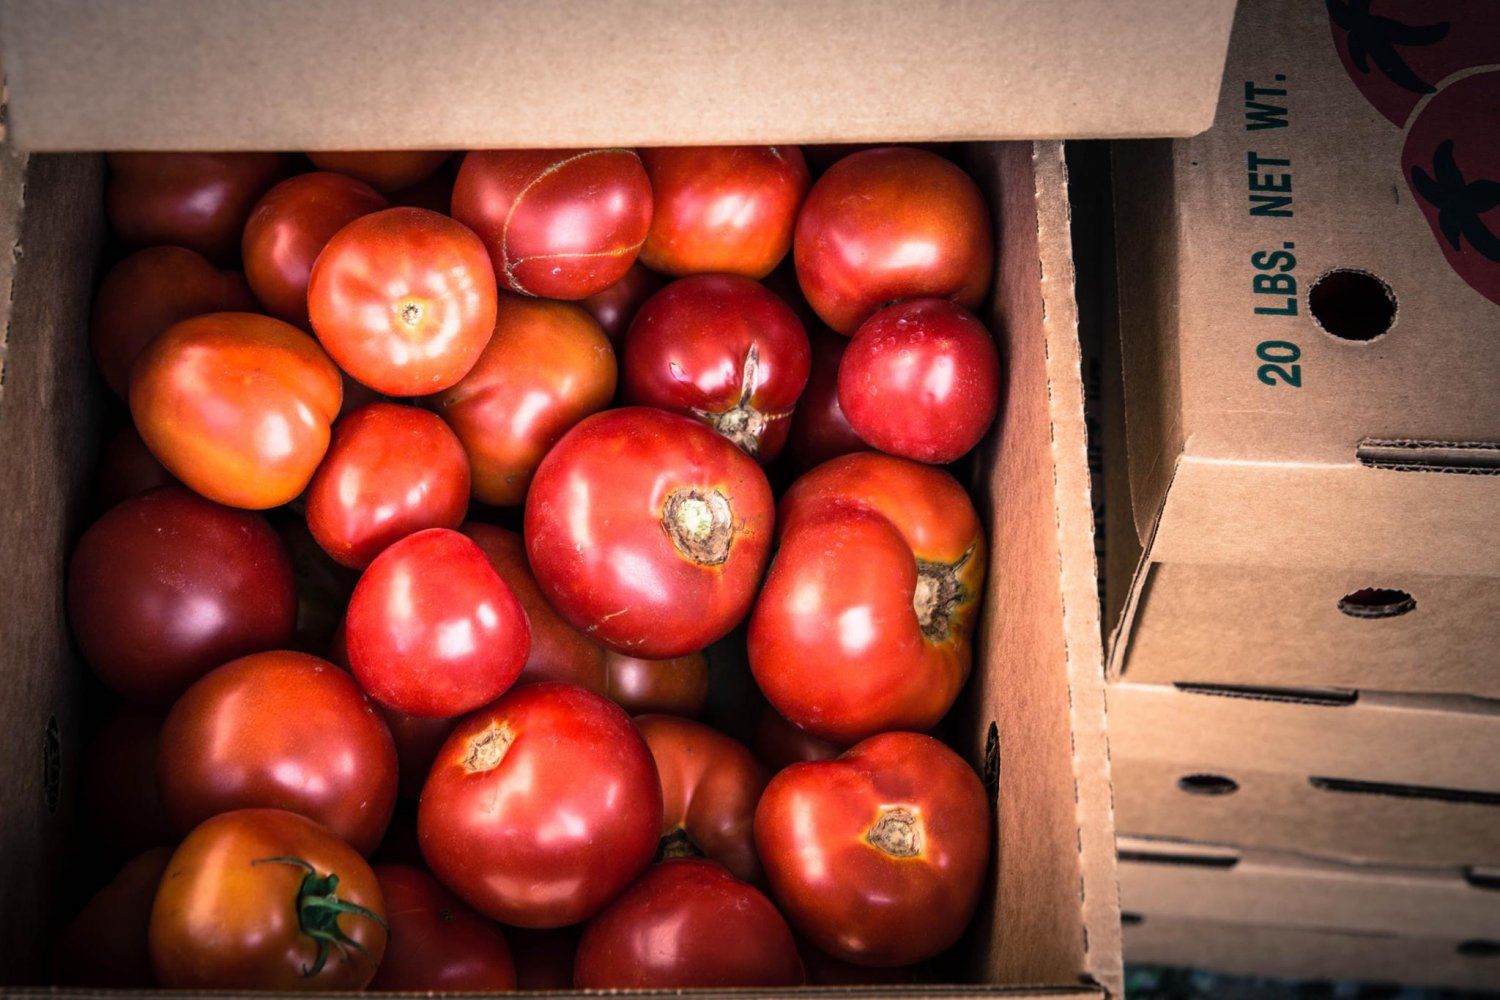 Bulk Tomato Sale Saturday morning Aug 14, 2021 at Suffield Farm